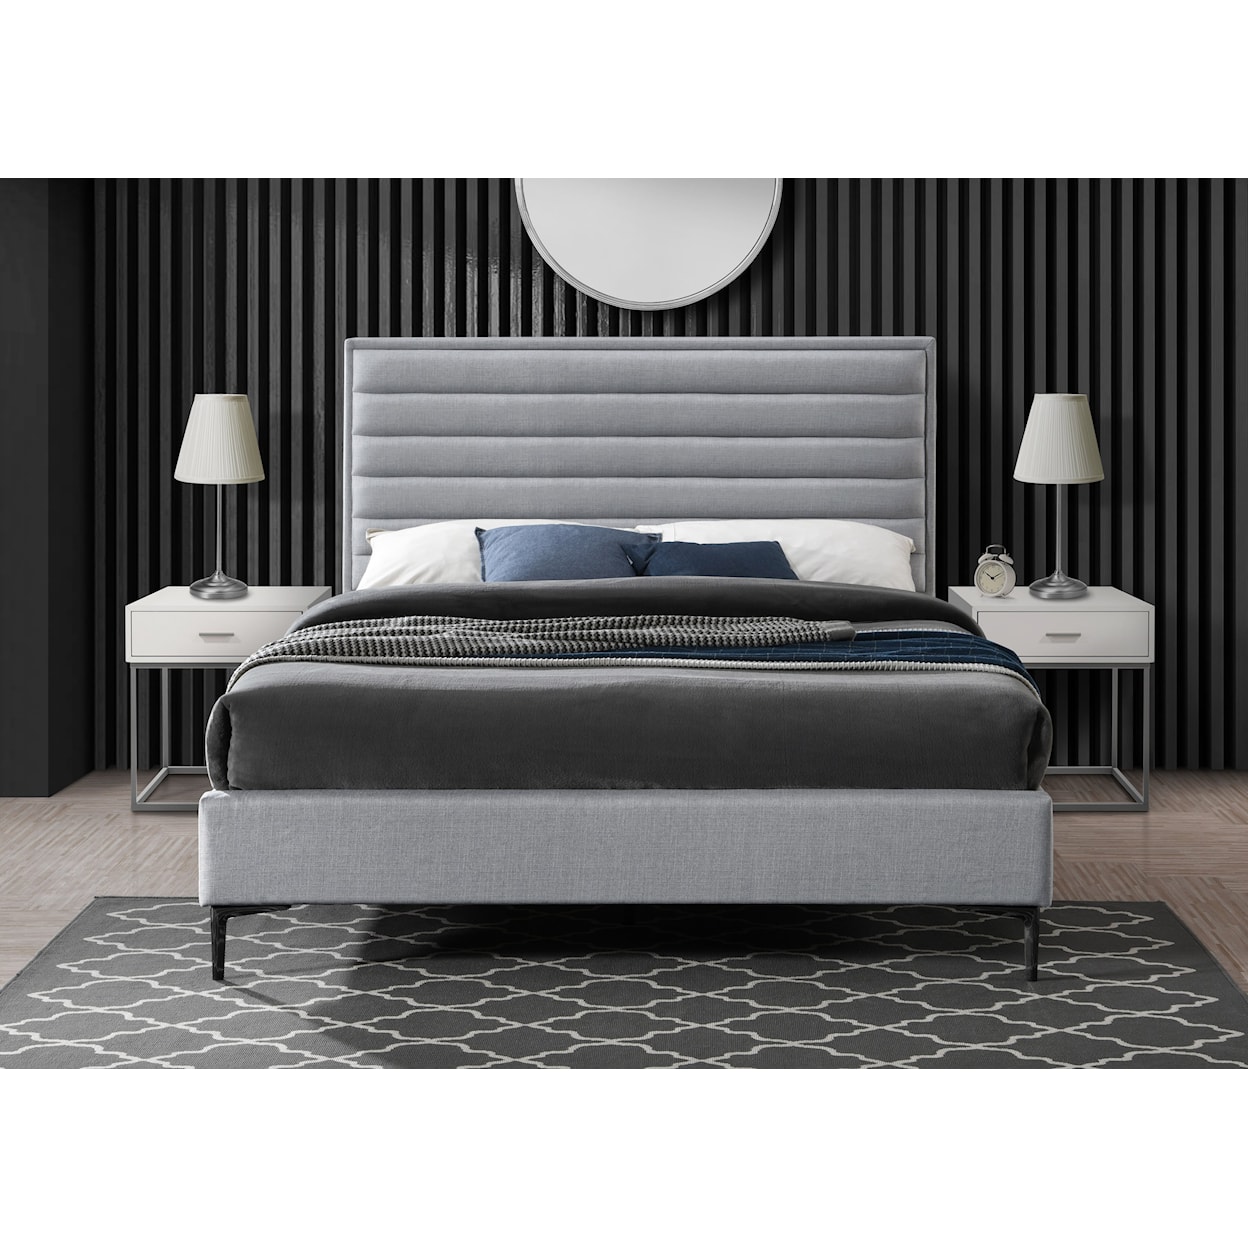 Meridian Furniture Hunter Queen Bed